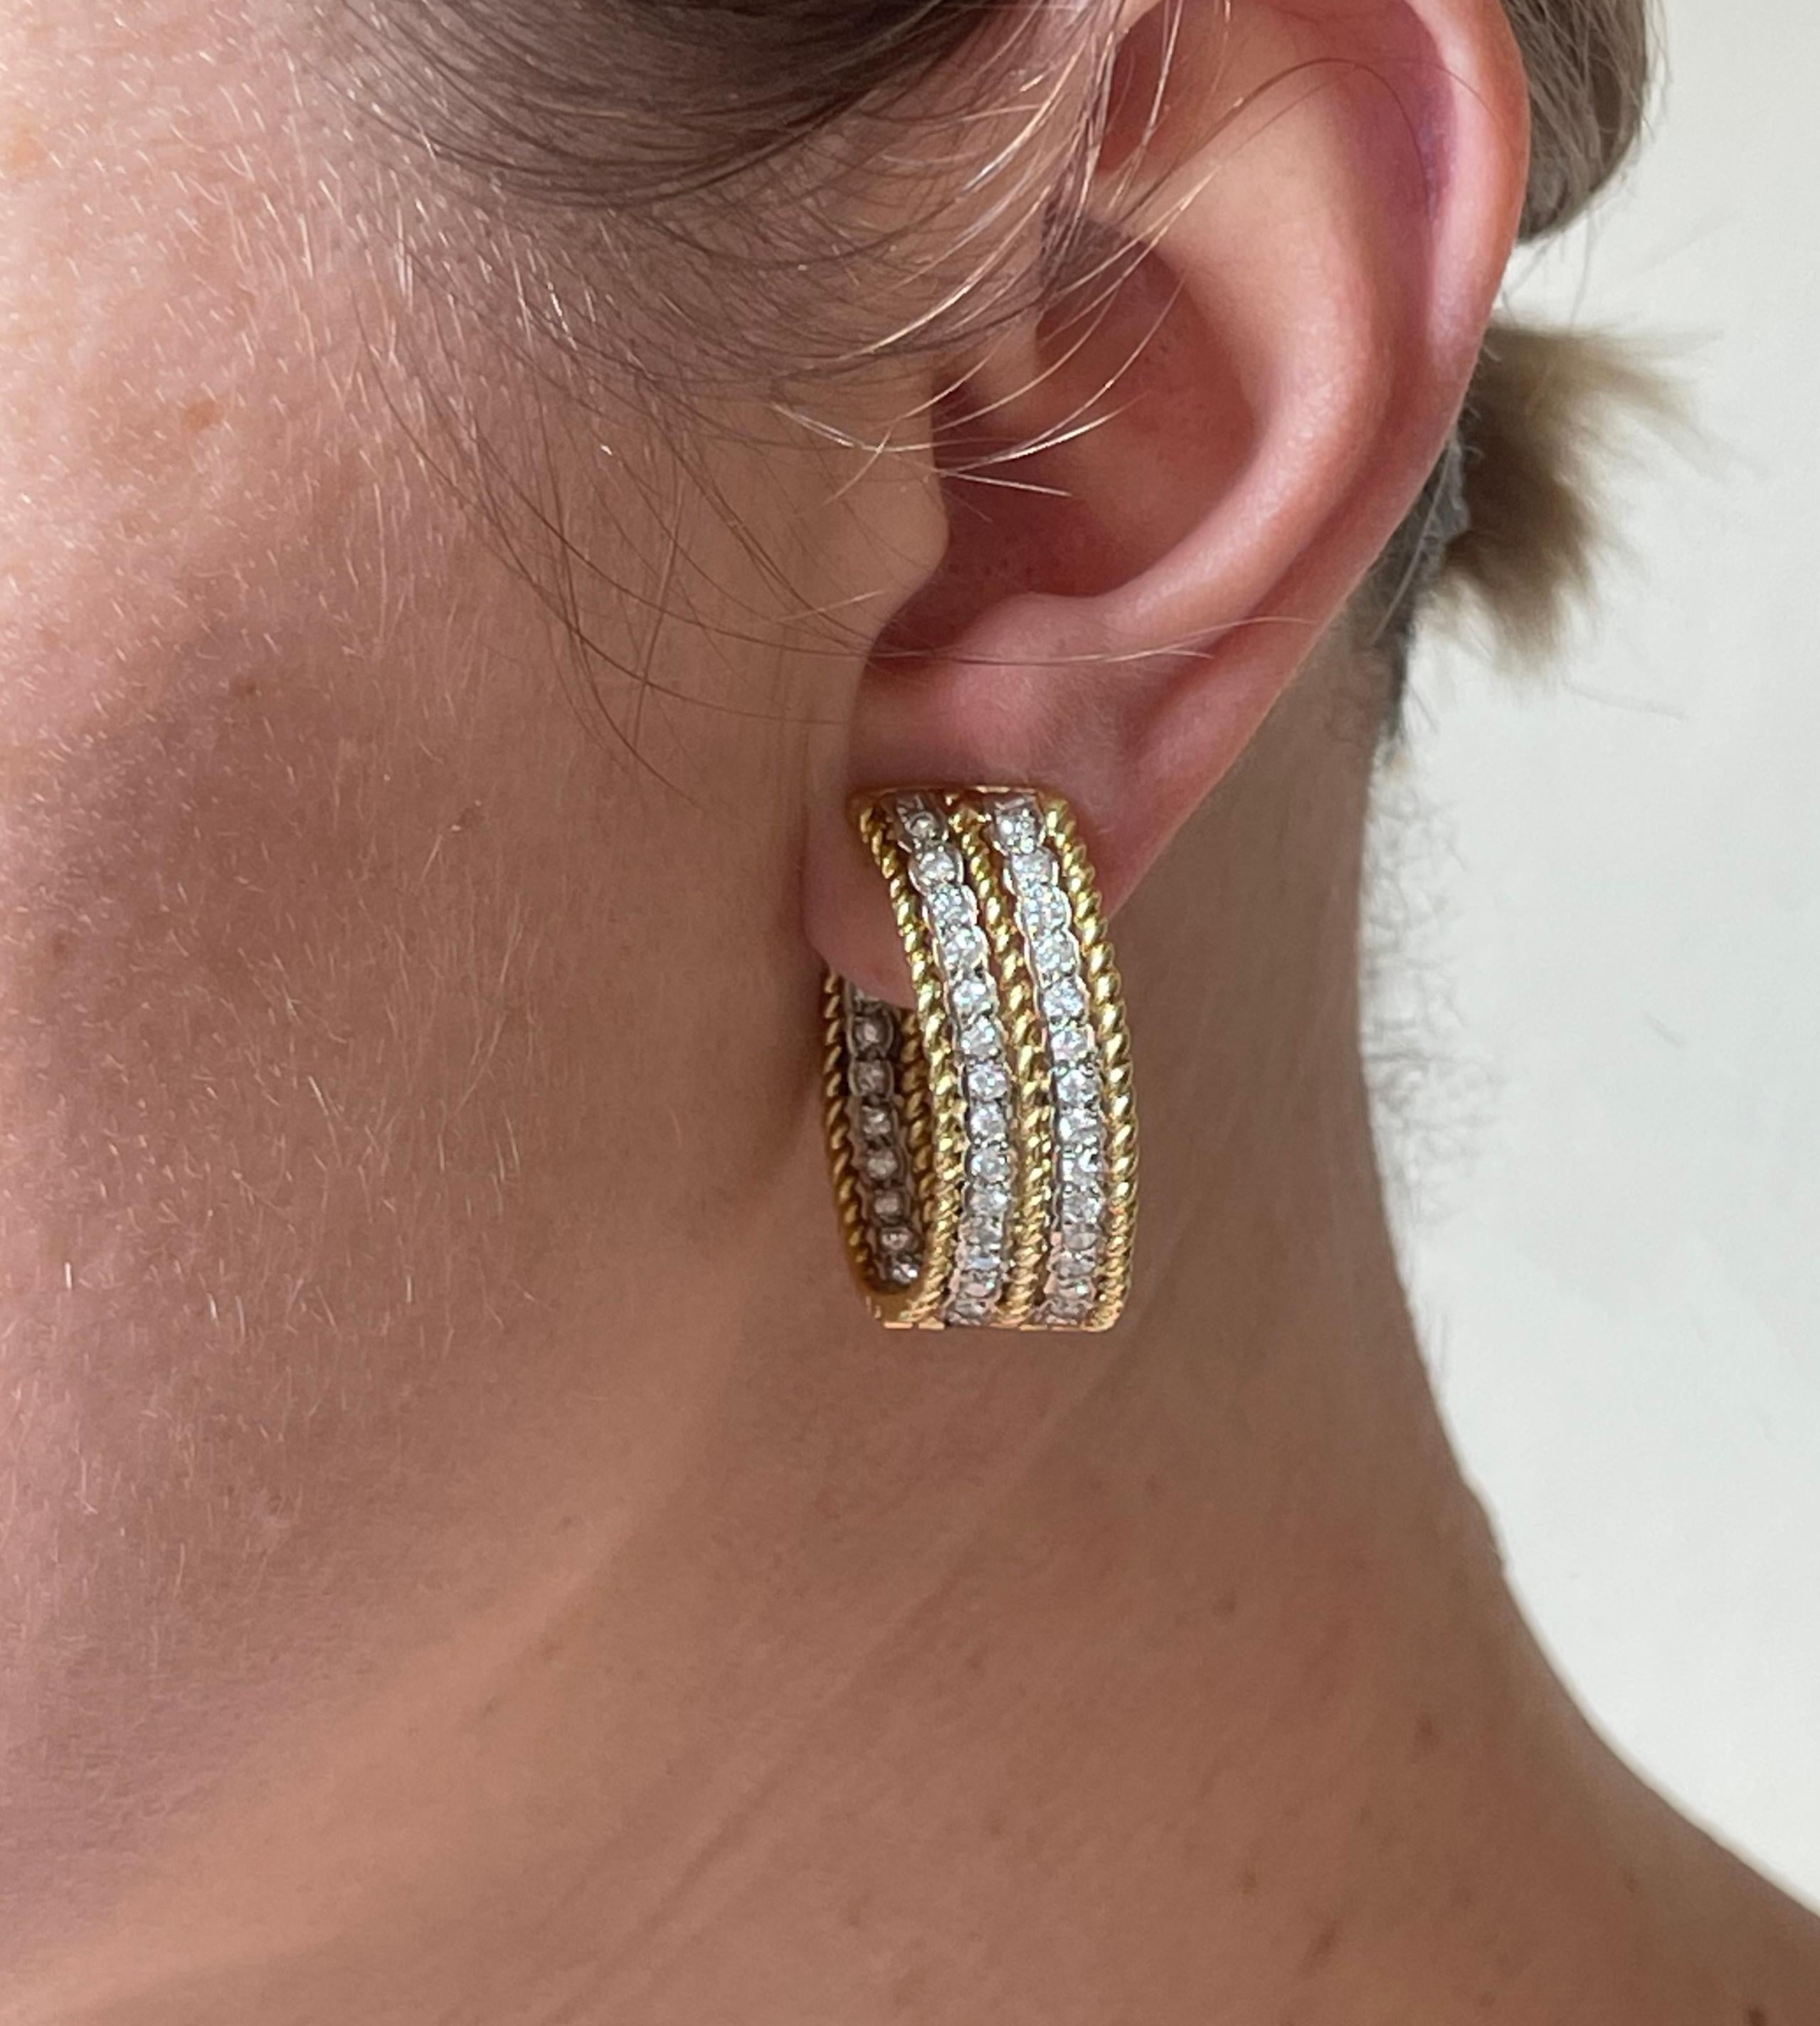 Paire de boucles d'oreilles vintage en or 18k datant des années 1960, serties d'environ 2,24ctw de diamants H/SI. Les boucles d'oreilles n'ont pas de tige. Poinçon de 18 carats. Les boucles d'oreilles mesurent 1,25